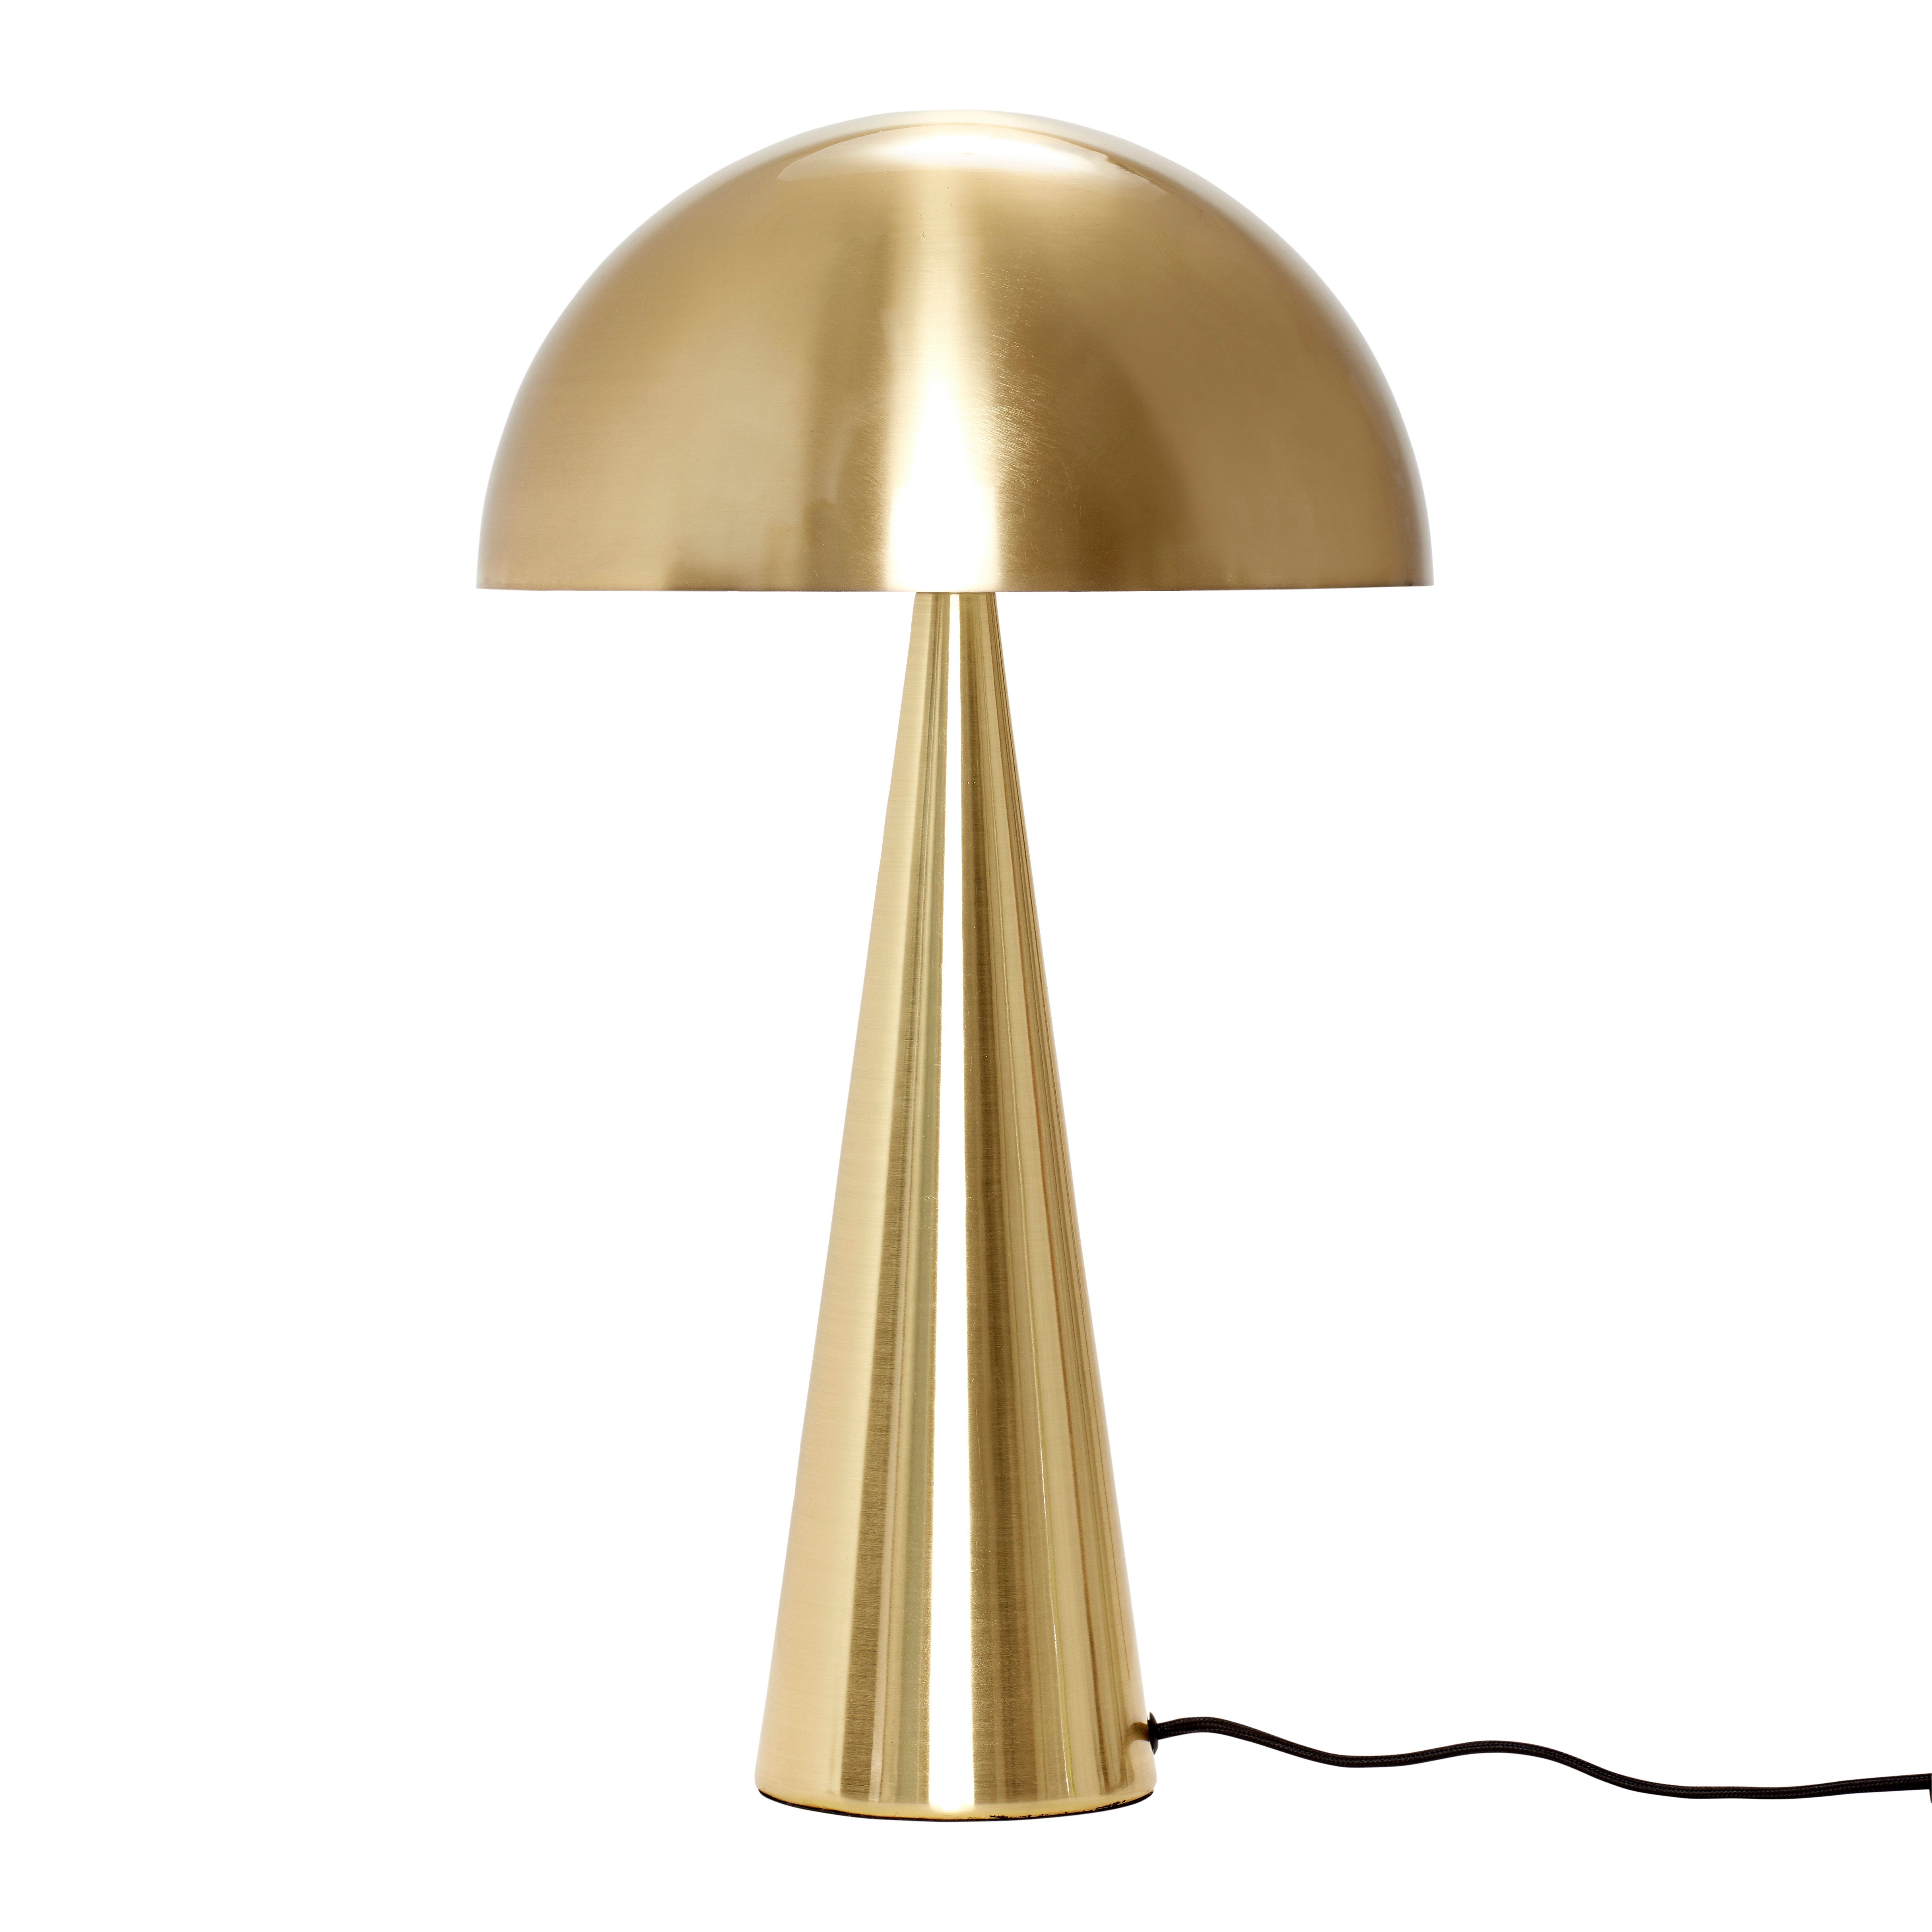 Die Tischleuchte "Mush" in Messingfarben, mit einem Lampenschirm in halber Kuppelform und einem kegelförmigen Fuß, verleiht jedem Raum einen Hauch von Eleganz und Retro-Flair